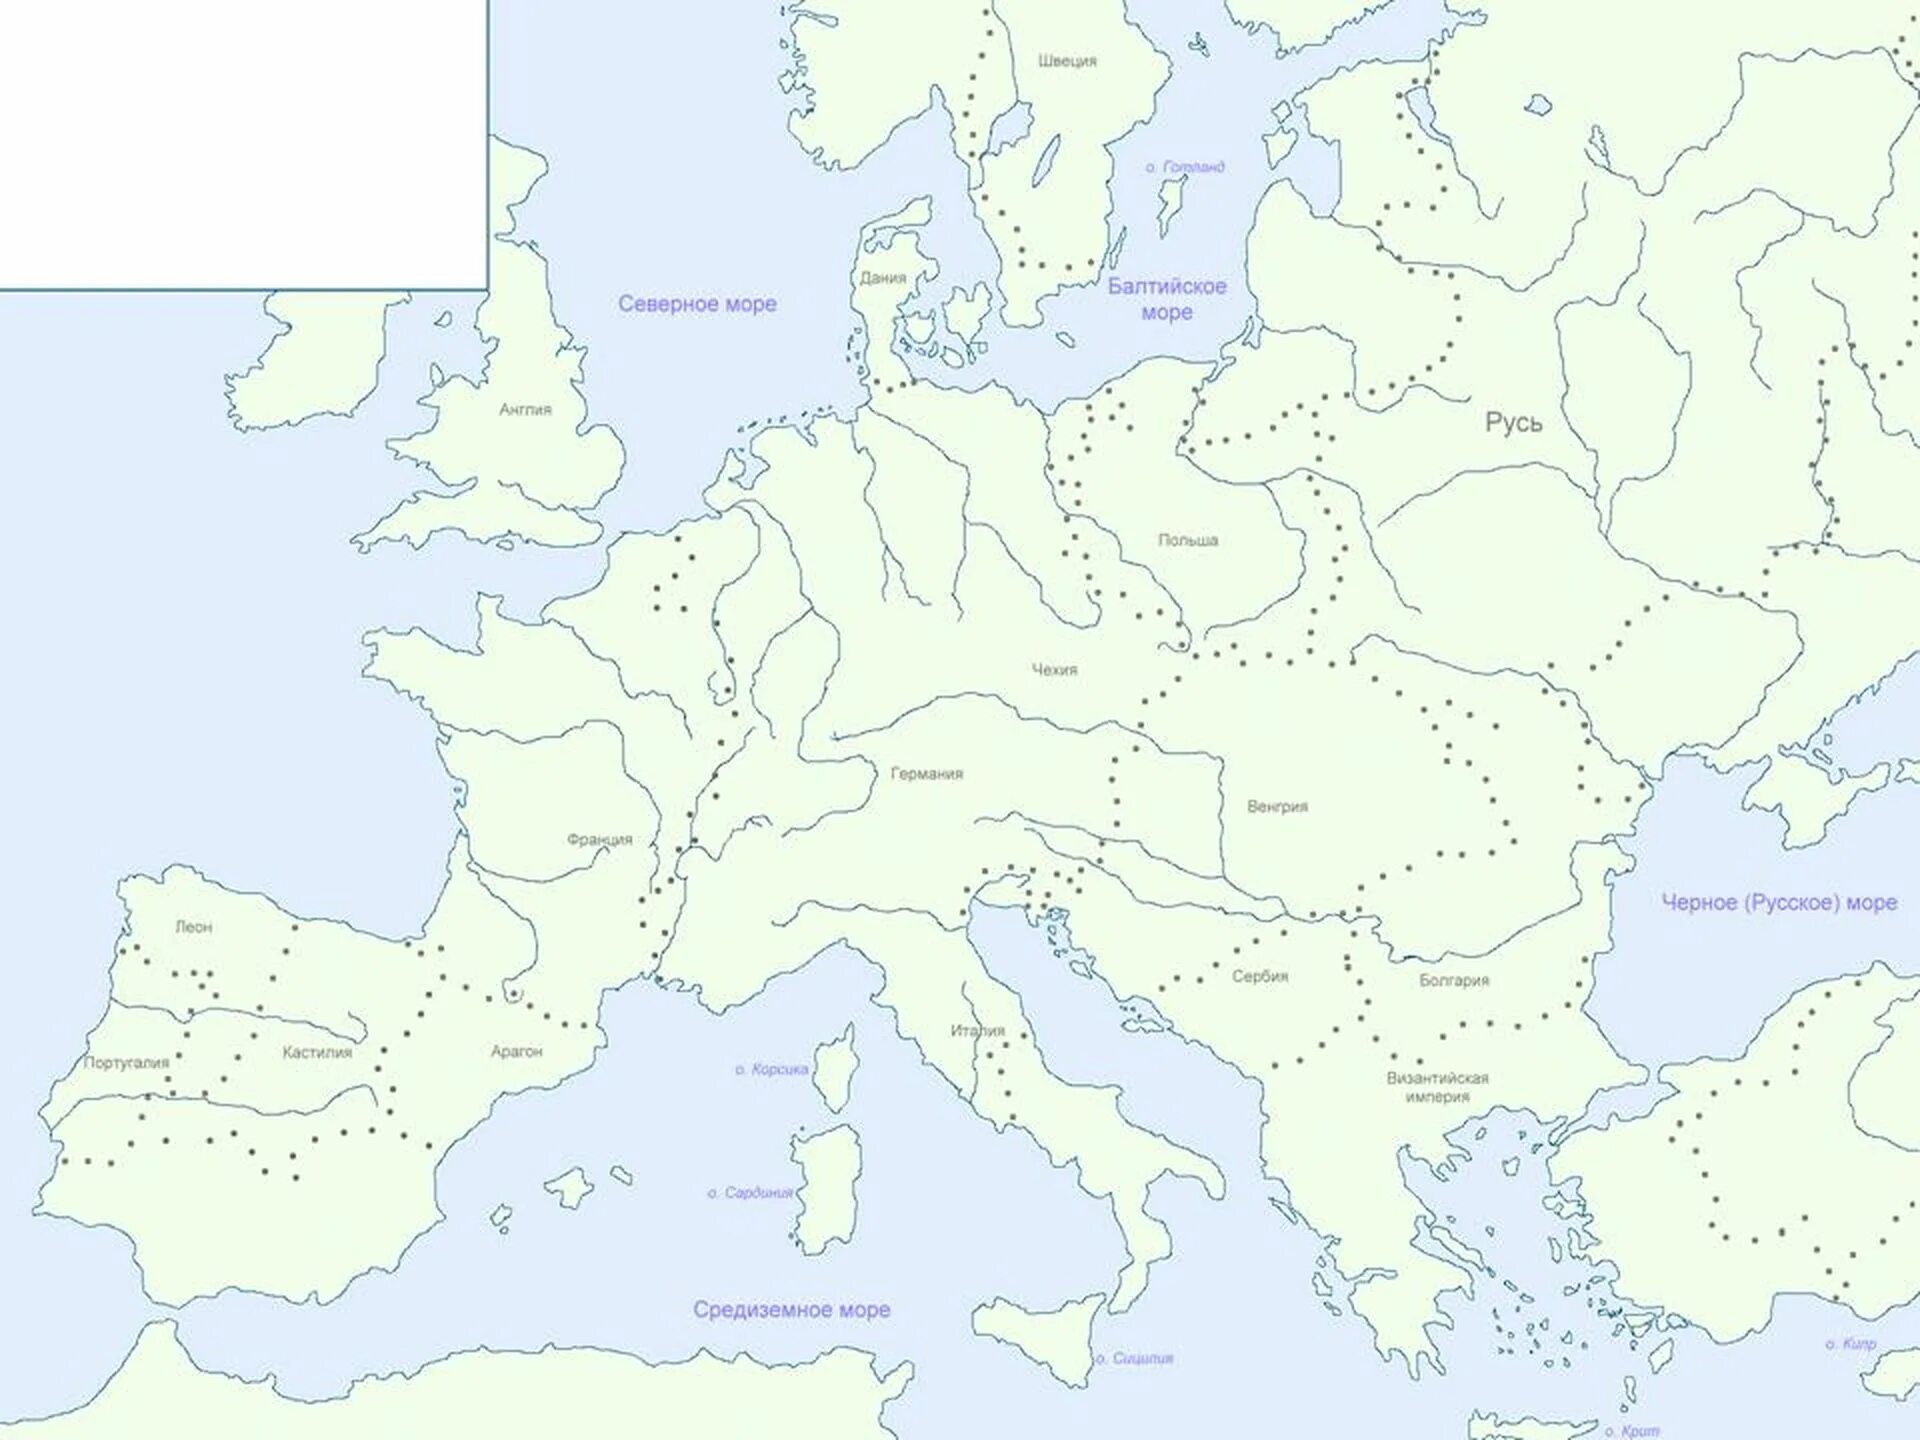 Контурная карта Европа 18 век. Карта Восточной Европы в 17 веке. Карта Восточной Европы 17 век. Контурная карта Европы 17 век.